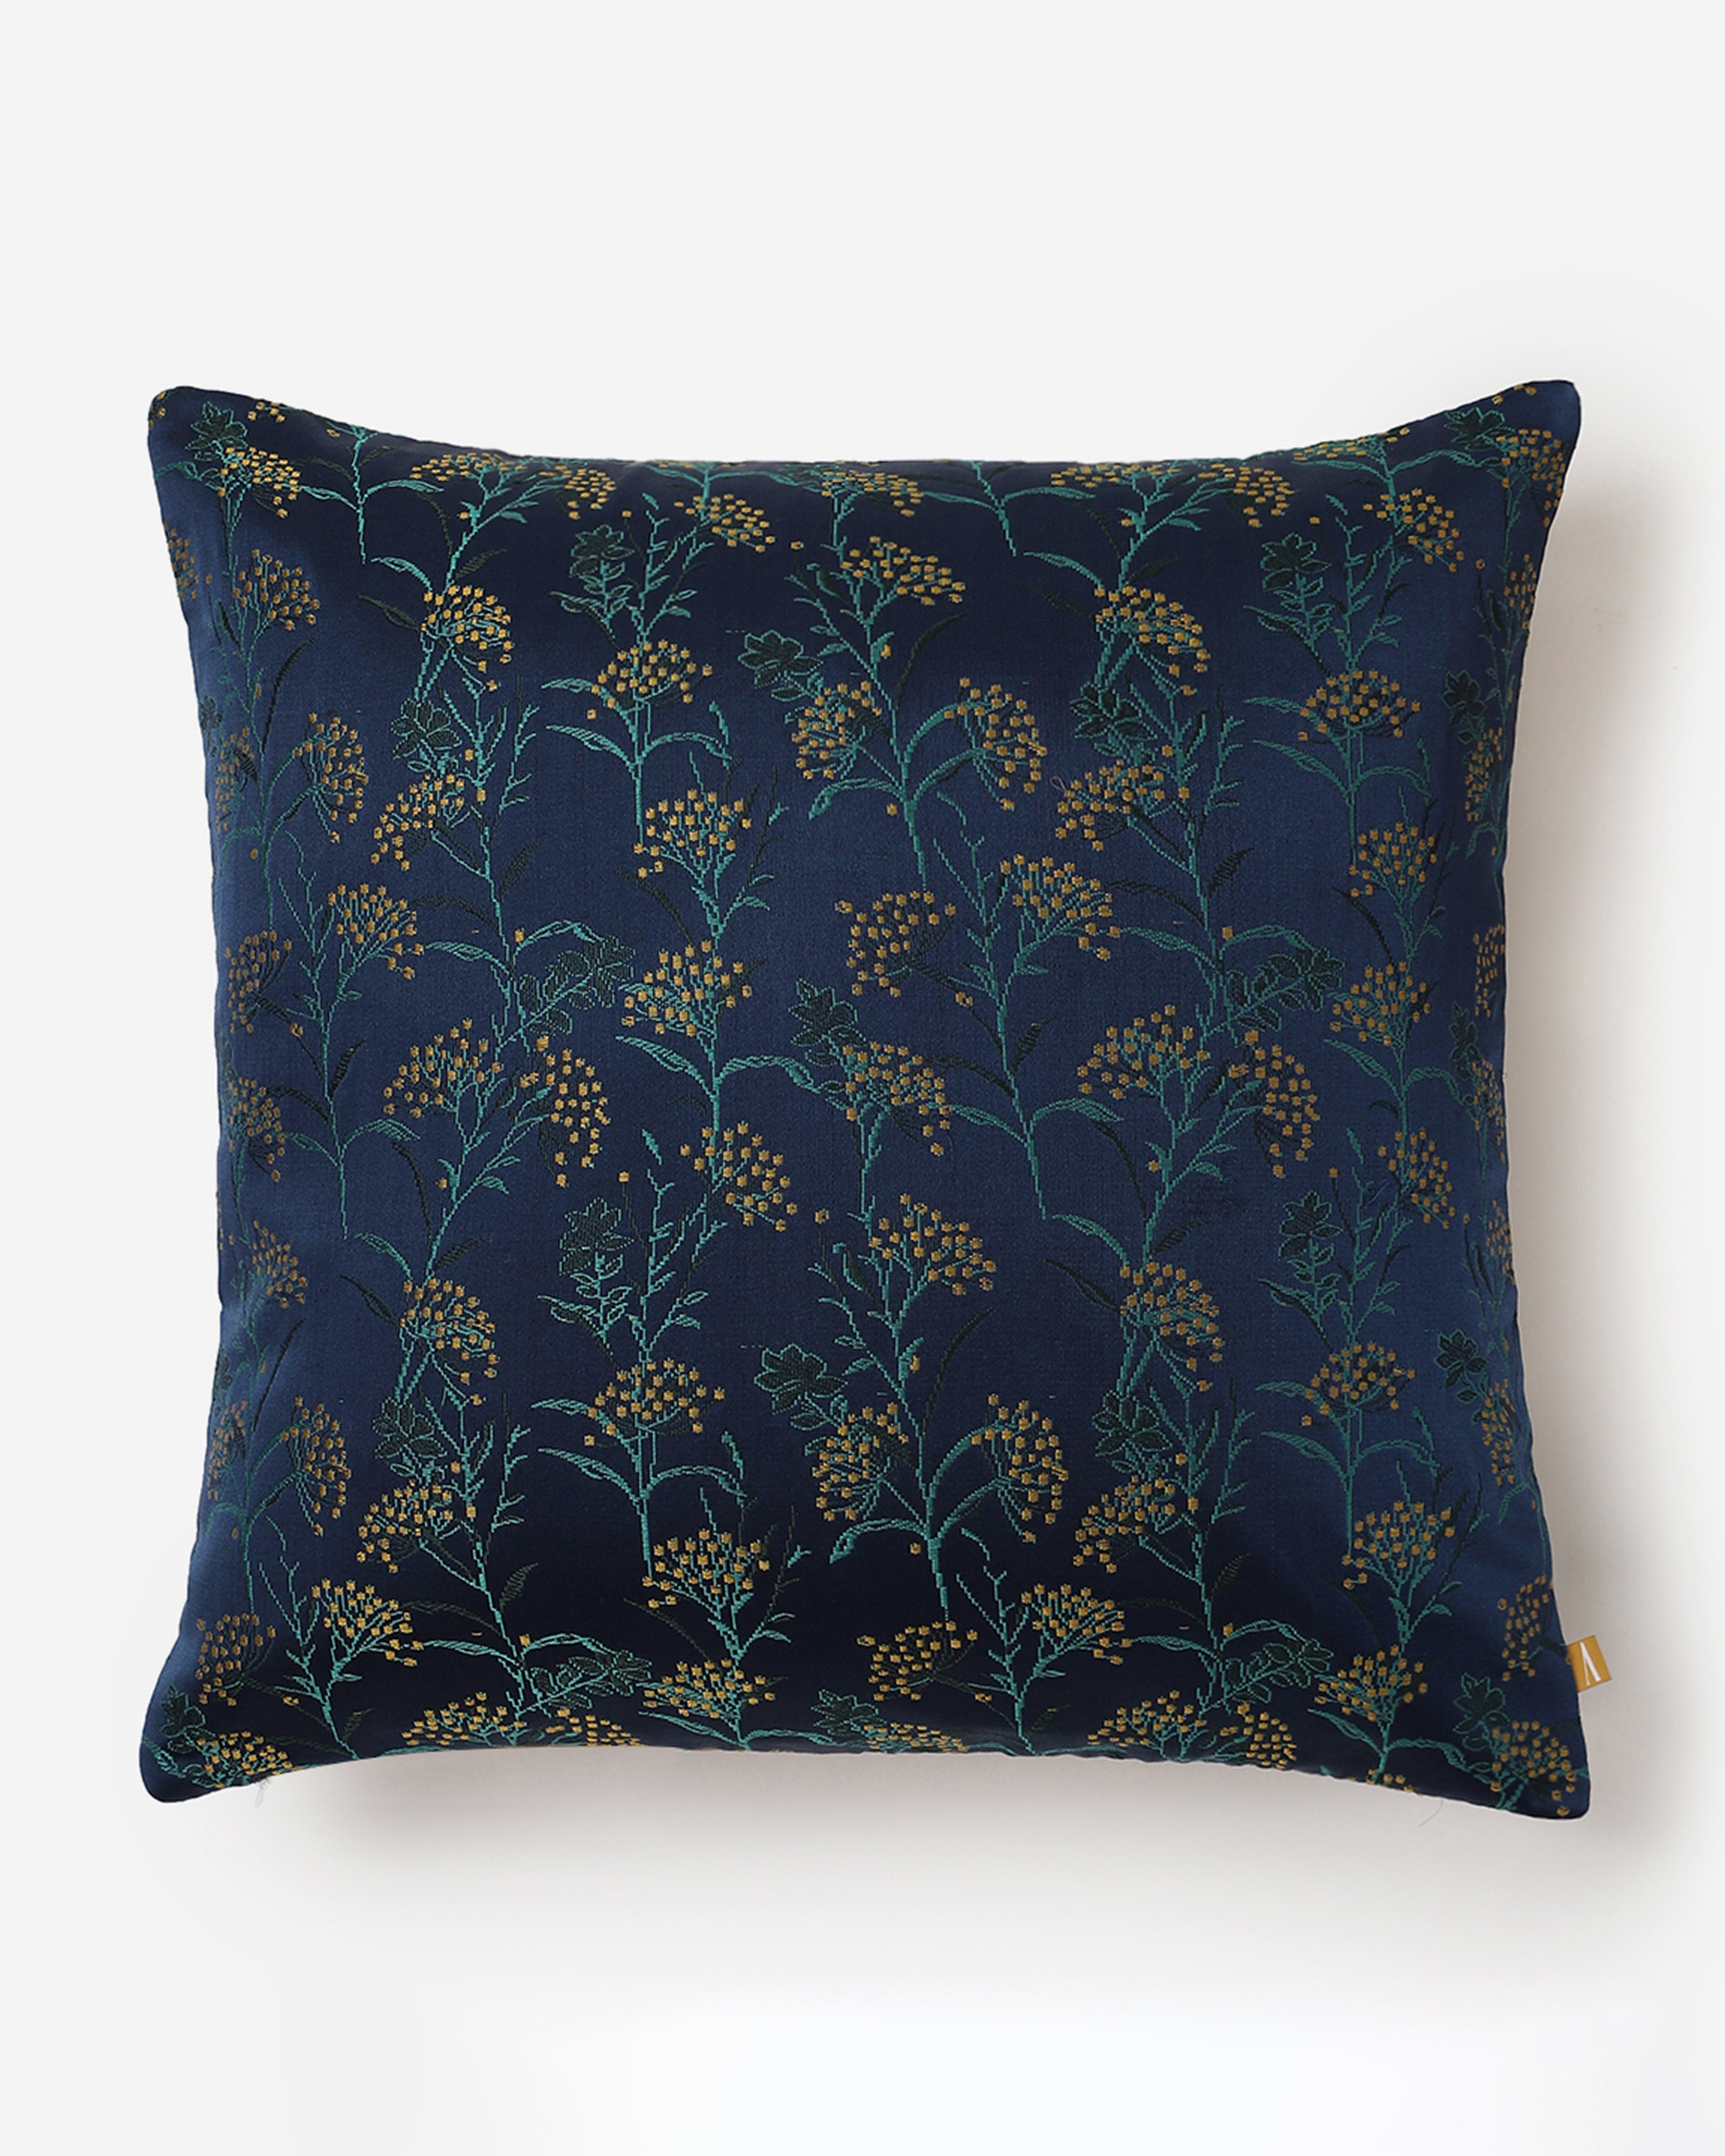 Lilian Satin Brocade Silk Cotton Cushion Cover